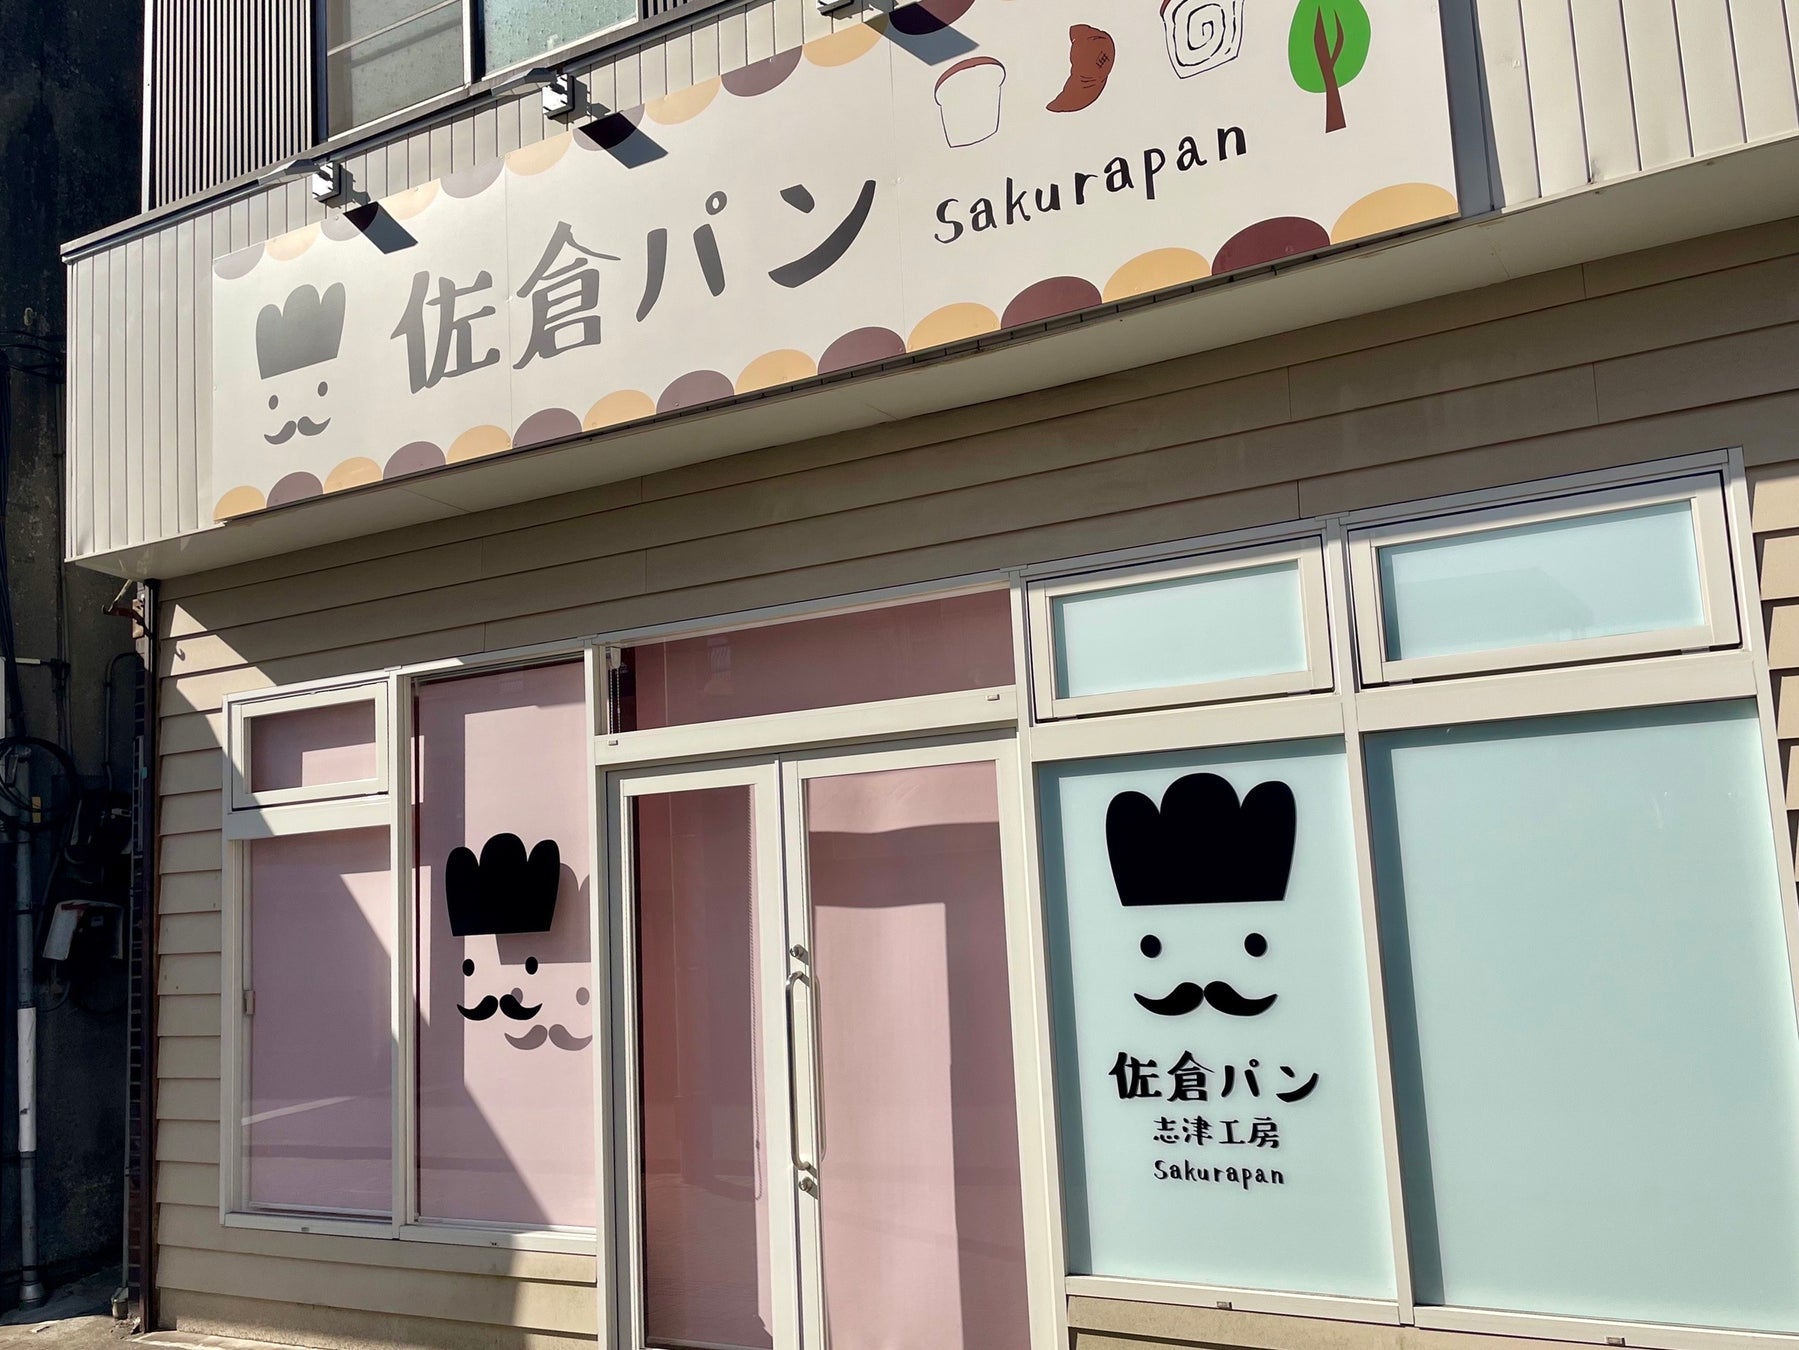 横浜から渋谷へ。アートパッケージのチョコレート屋が渋谷東急に限定オープン。期間は3/15~3/23。